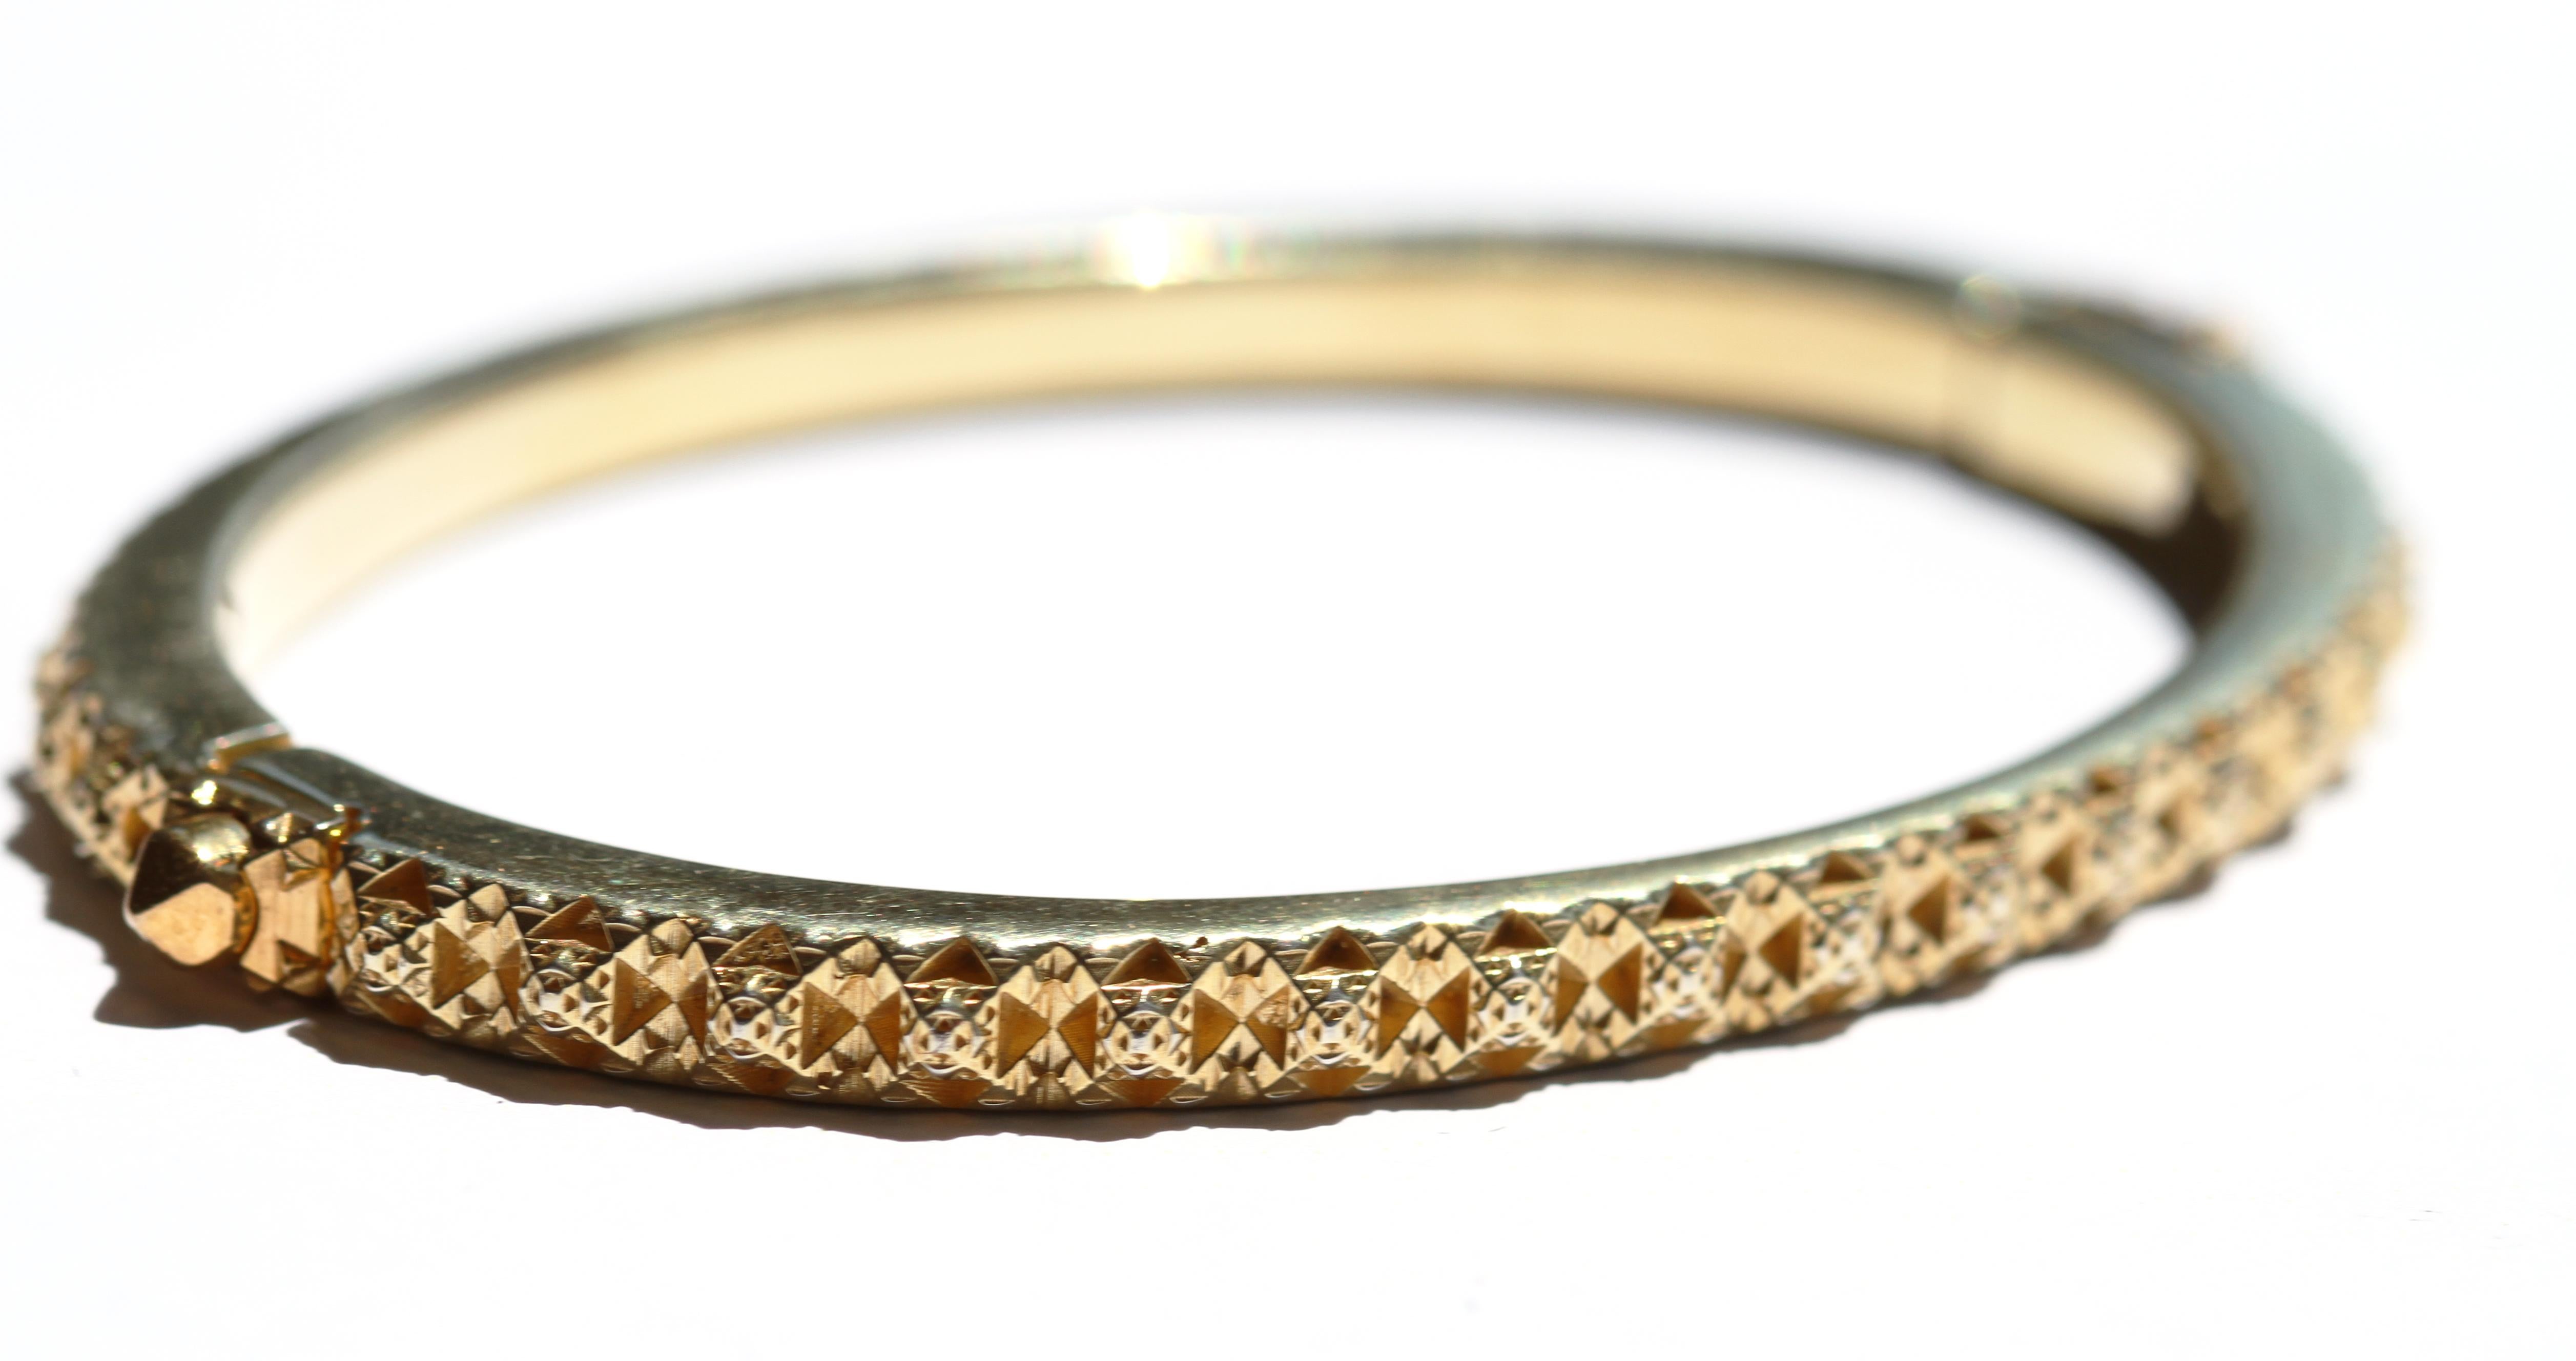 Dieses 18K Gold Fractal Thoscene Armband ist von antiker fraktaler Architektur und Mustern in der Natur inspiriert. Dieses kraftvolle Armband zeigt die klassischen kubischen Formen von John Brevard. Dieses Stück ist in limitierter Auflage erschienen